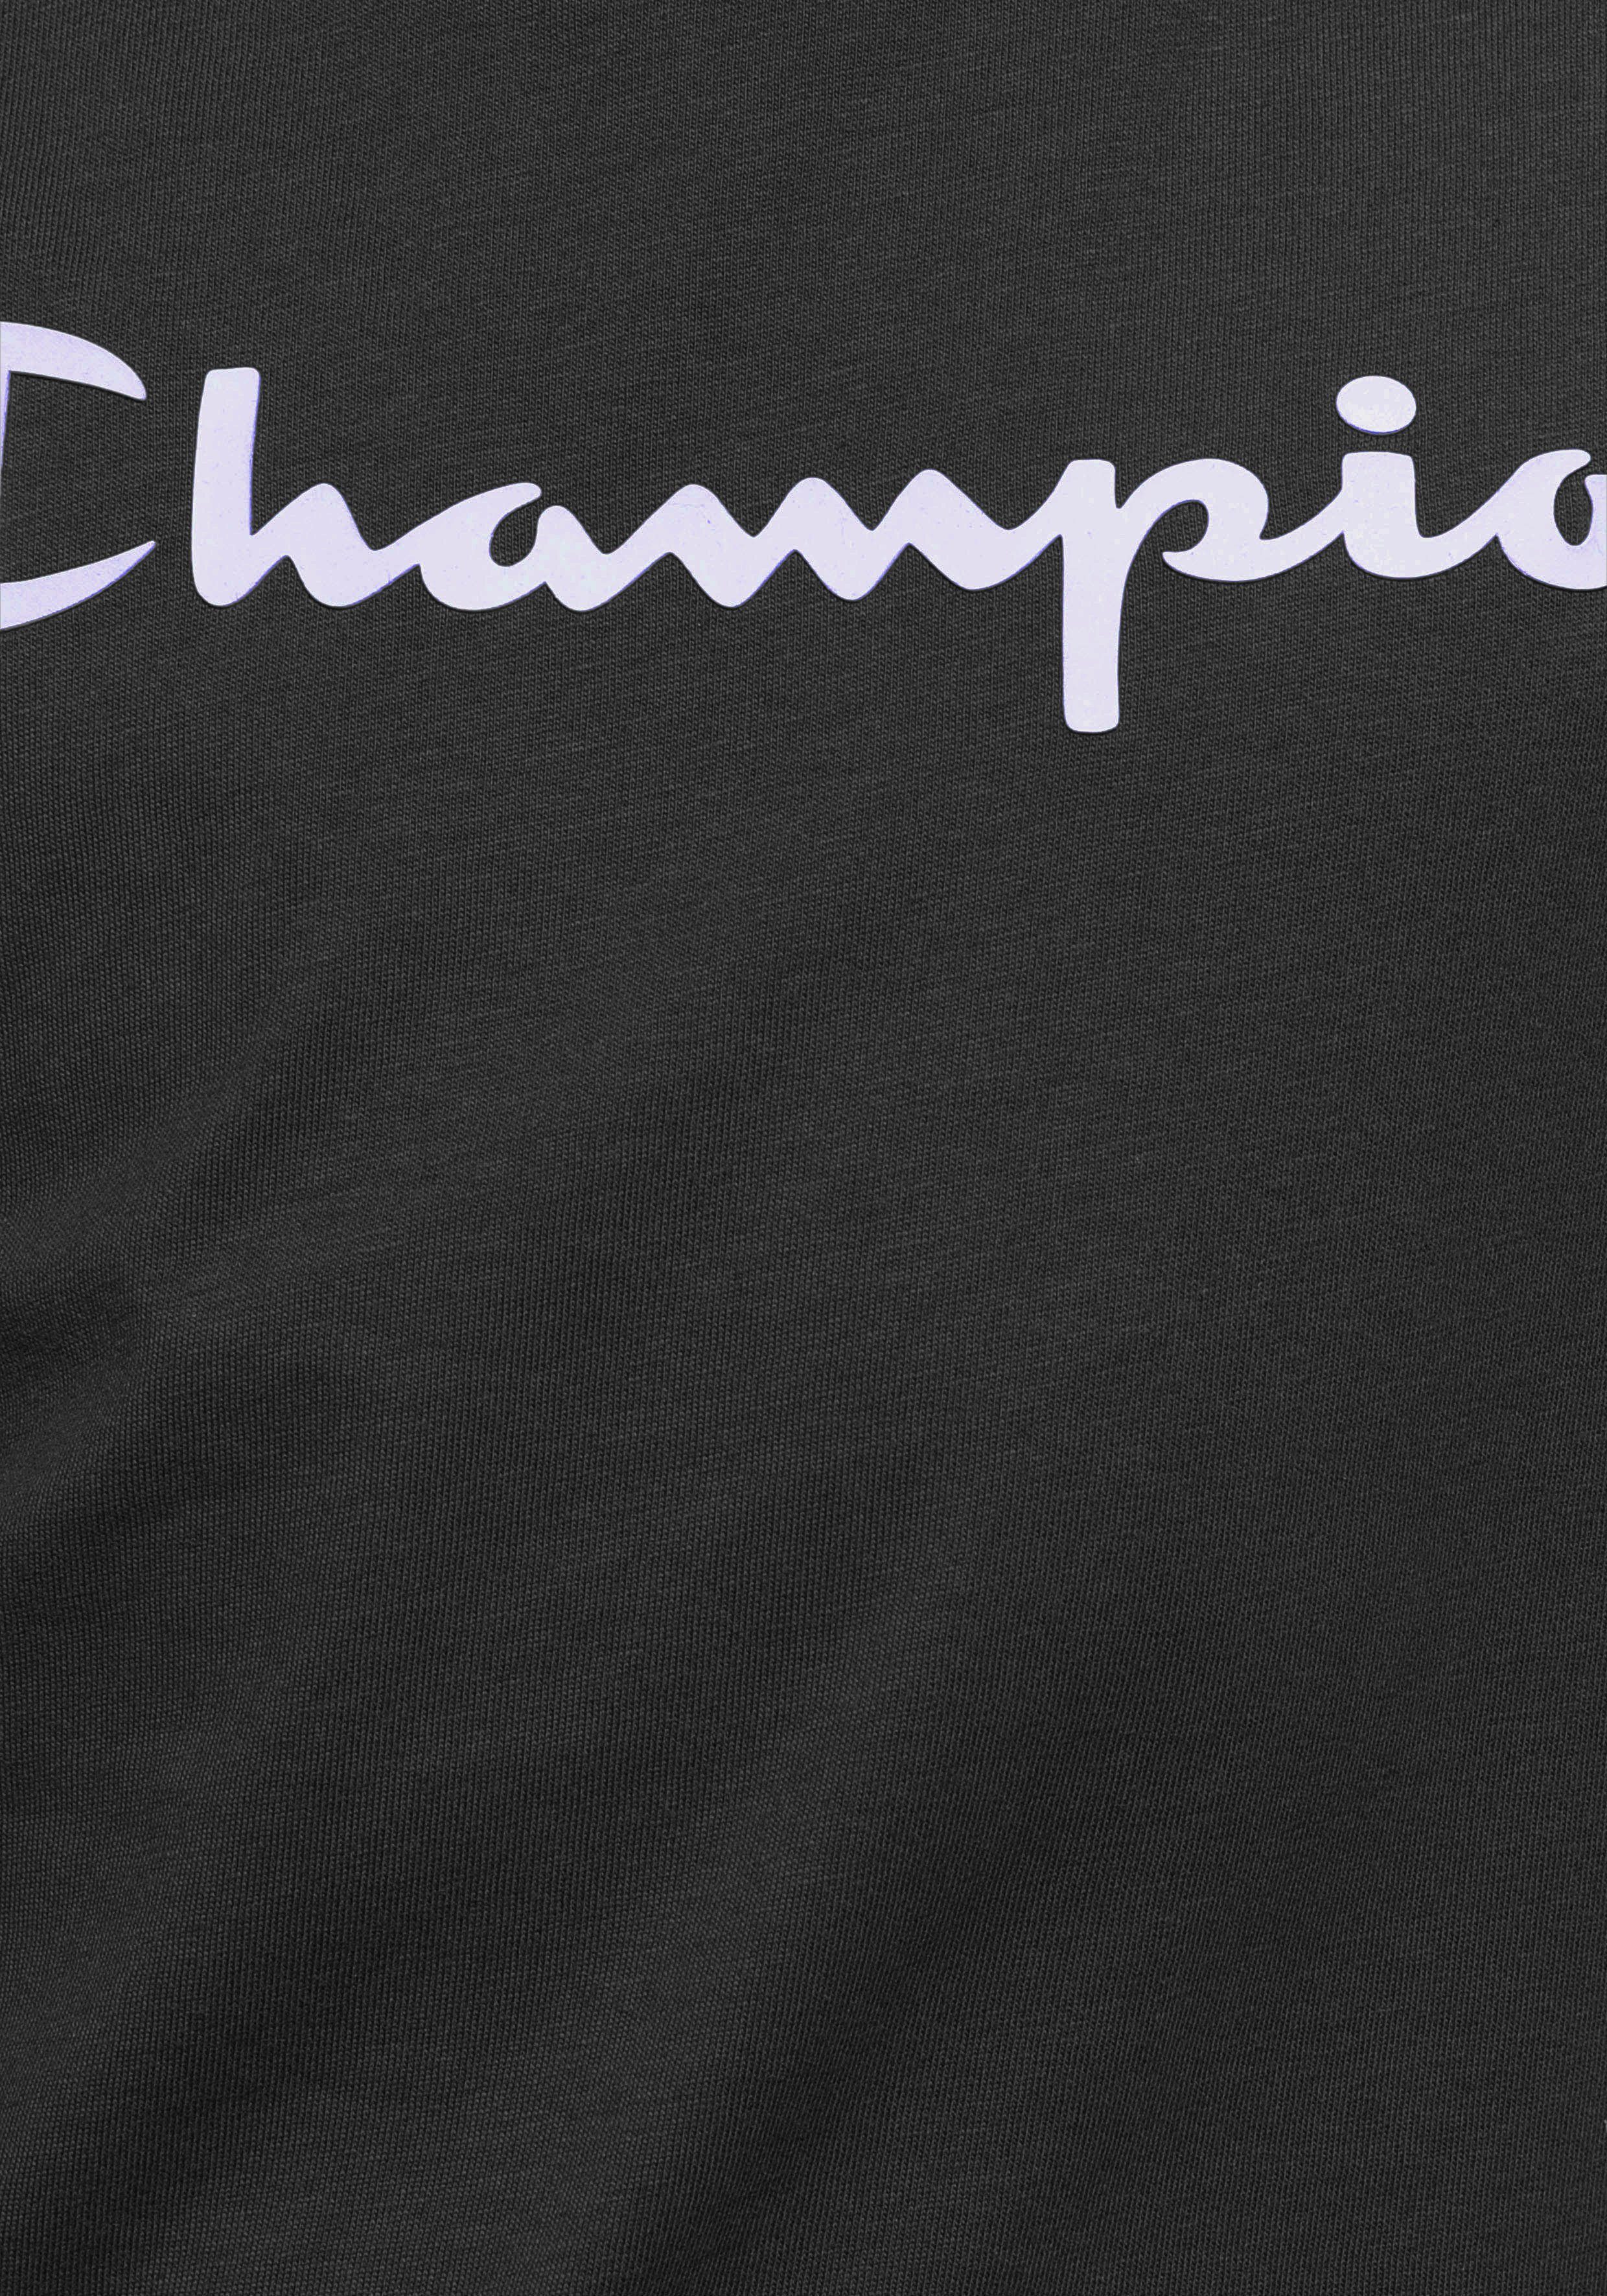 Champion T-Shirt 2Pack Crewneck T-Shirt - schwarz-weiß für Kinder